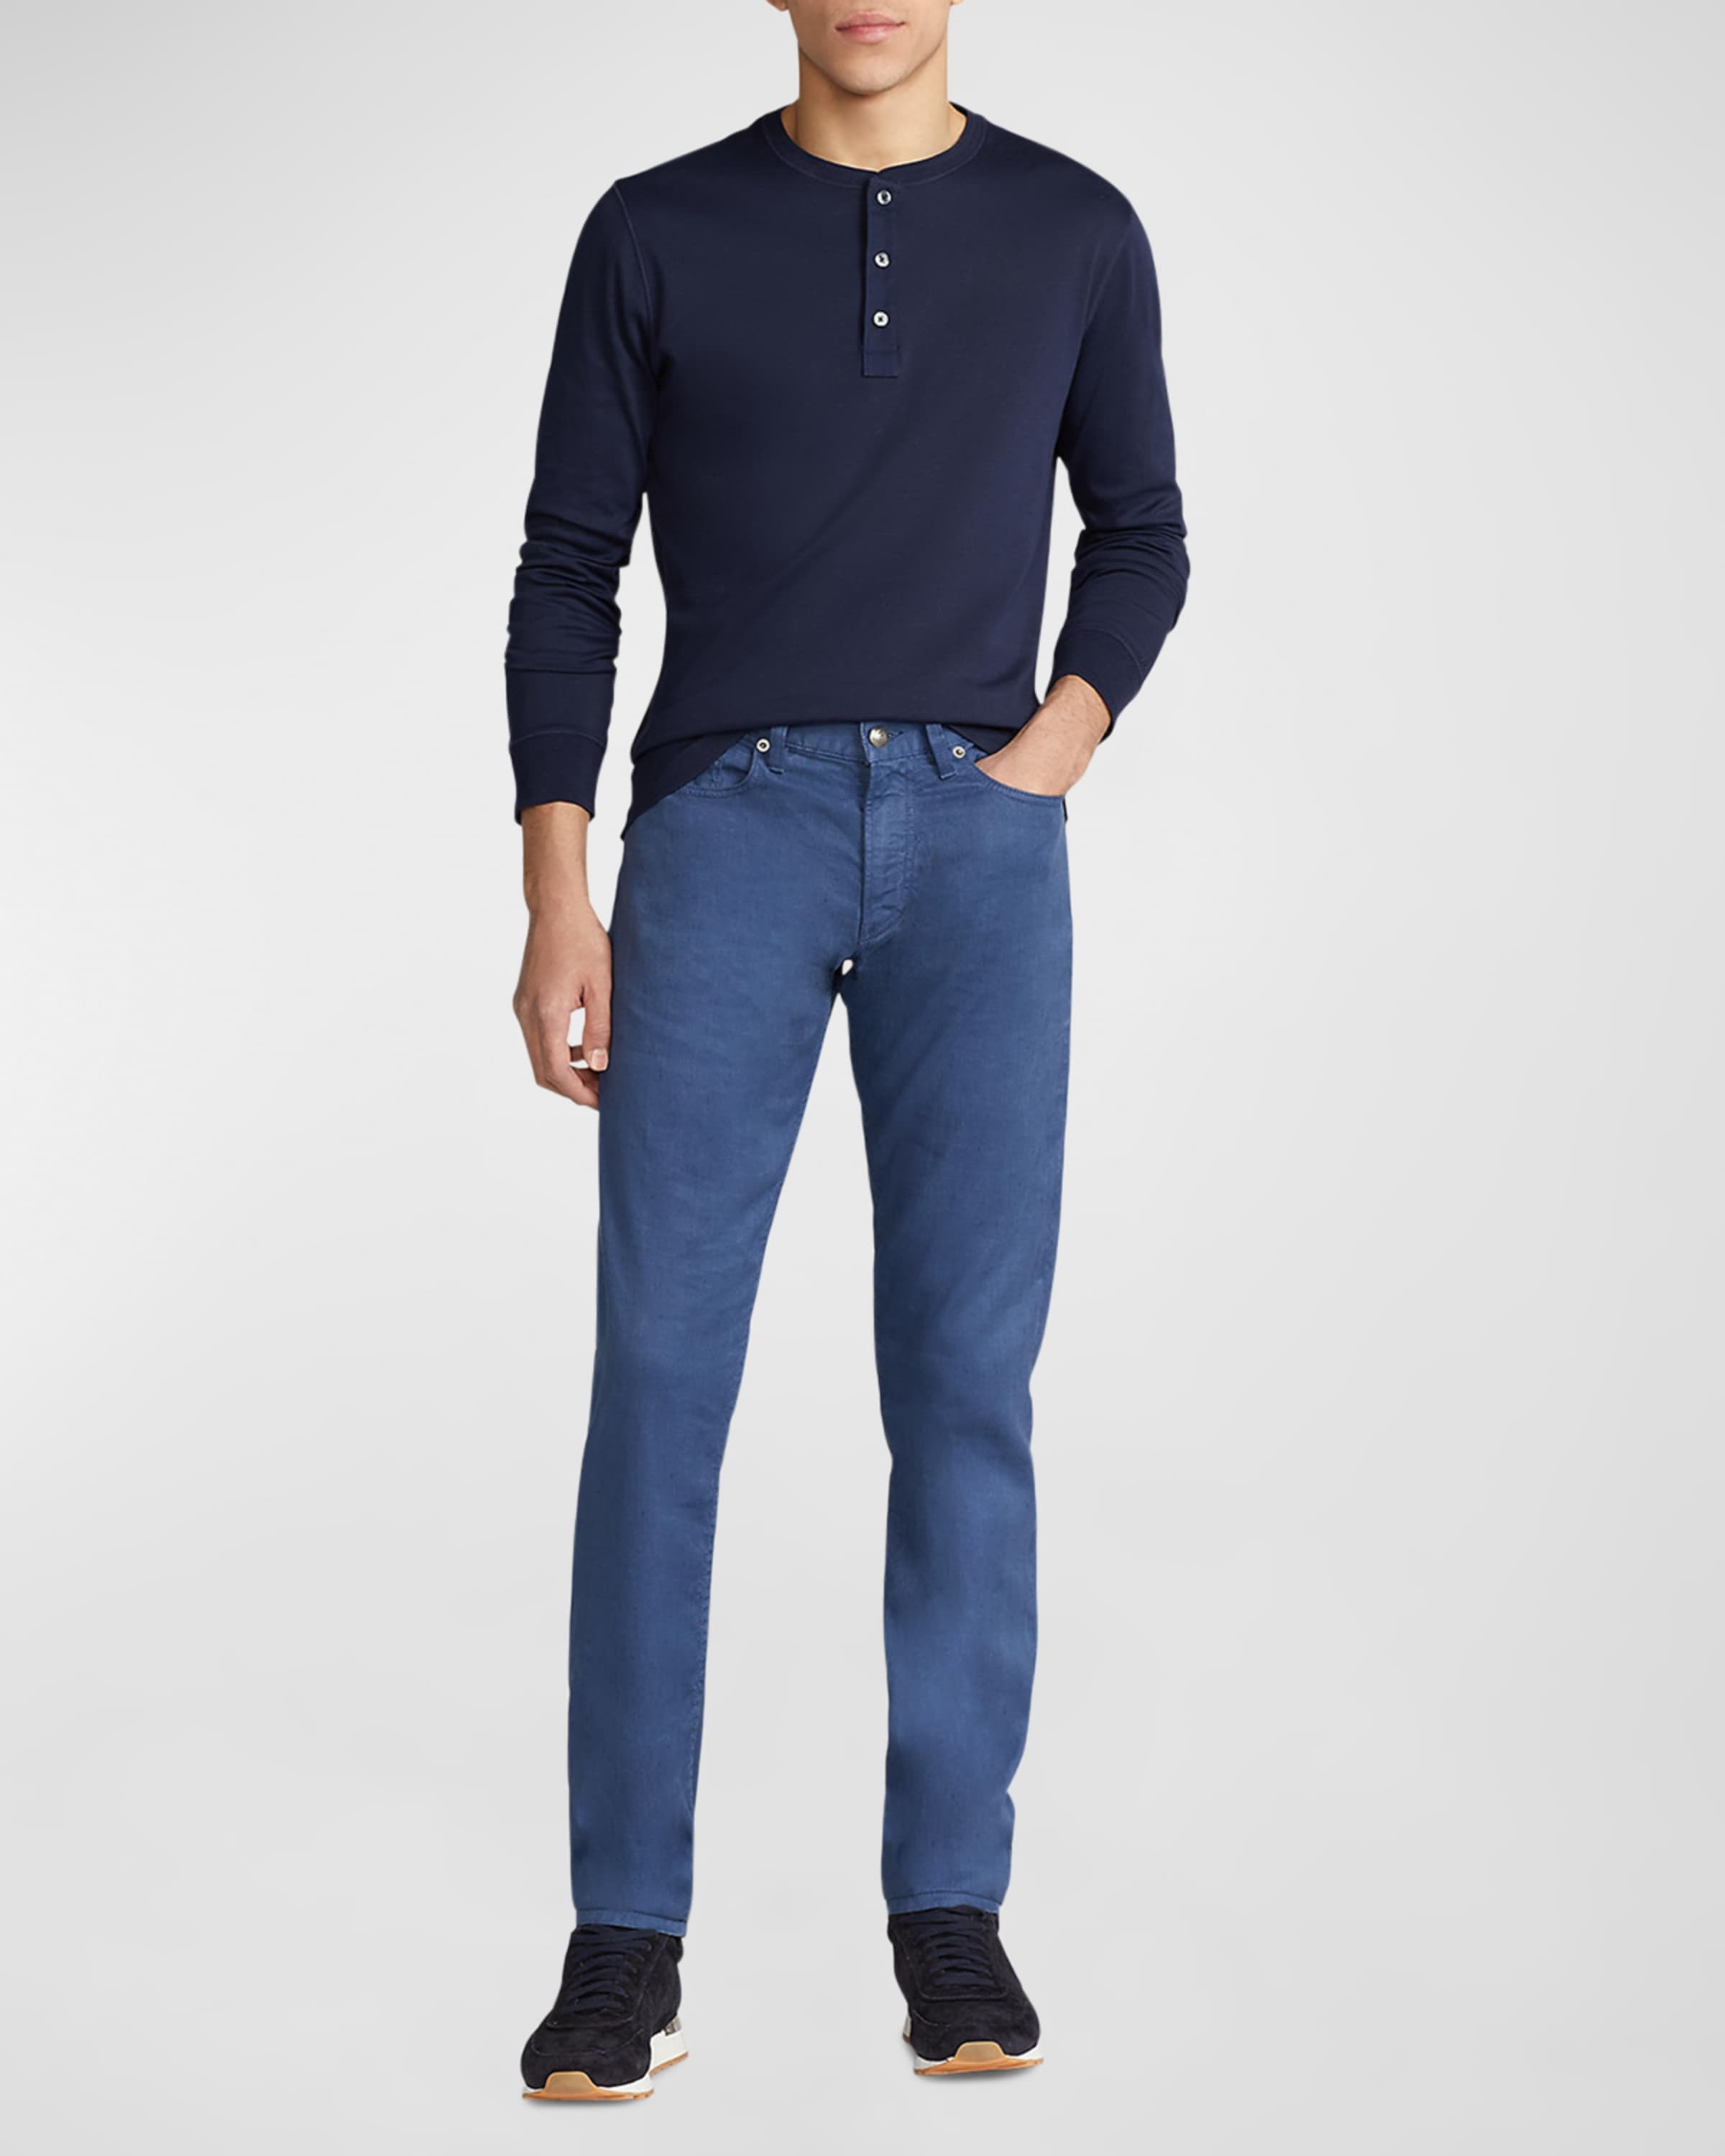 Men's Long-Sleeve Henley Shirt - 3